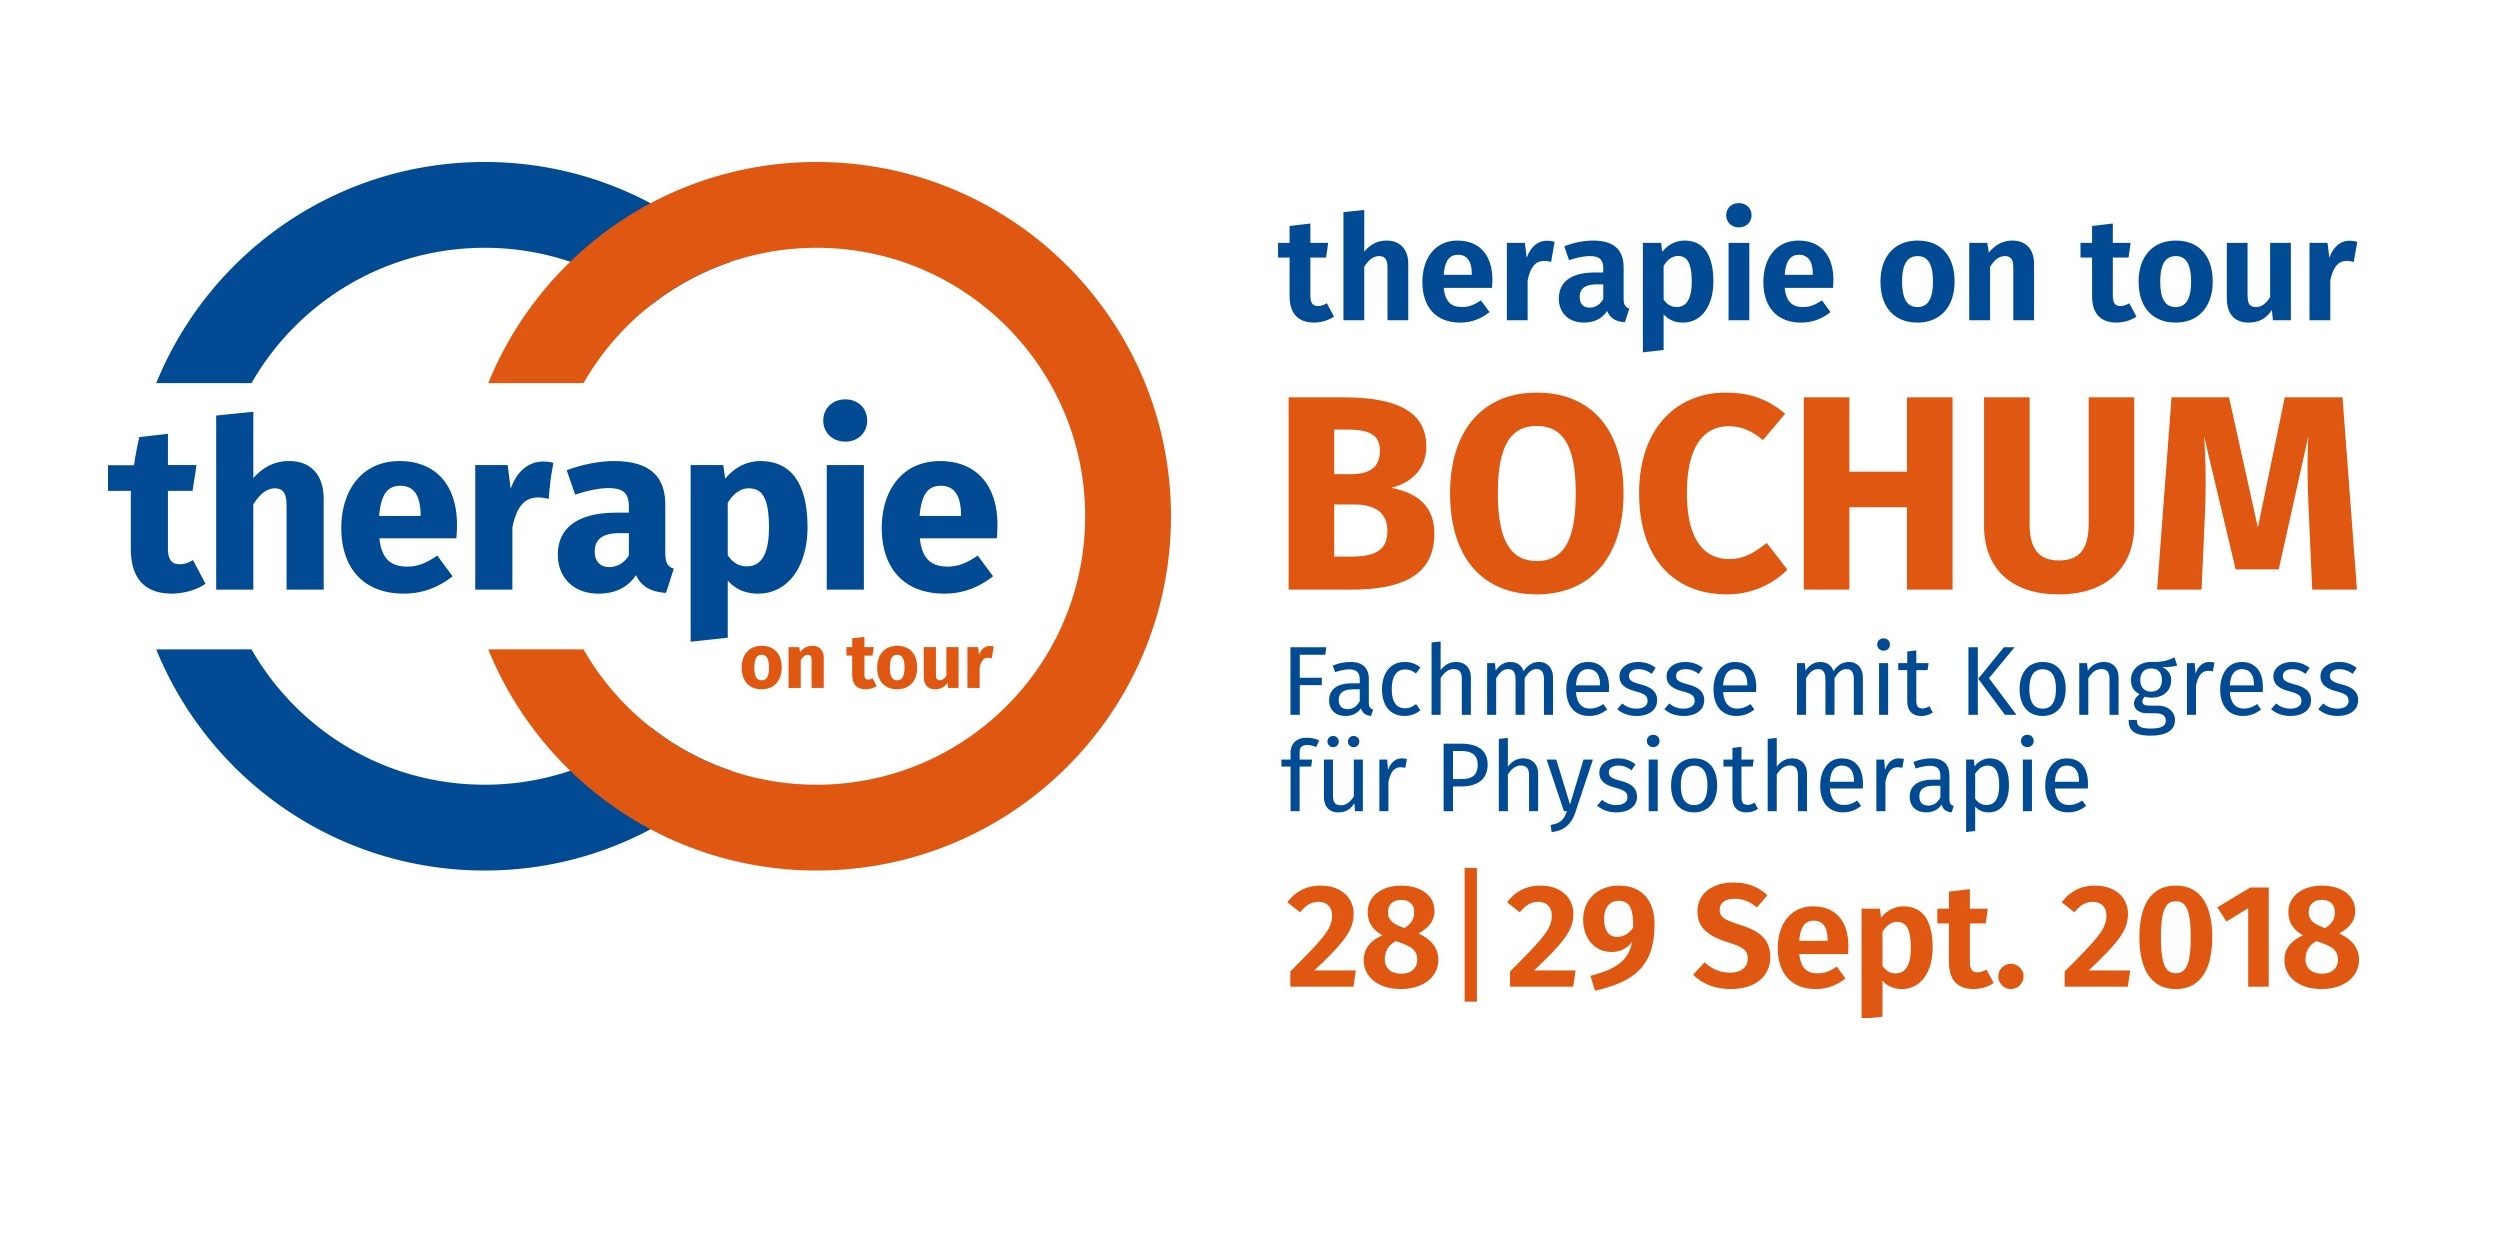 therapie on tour Bochum